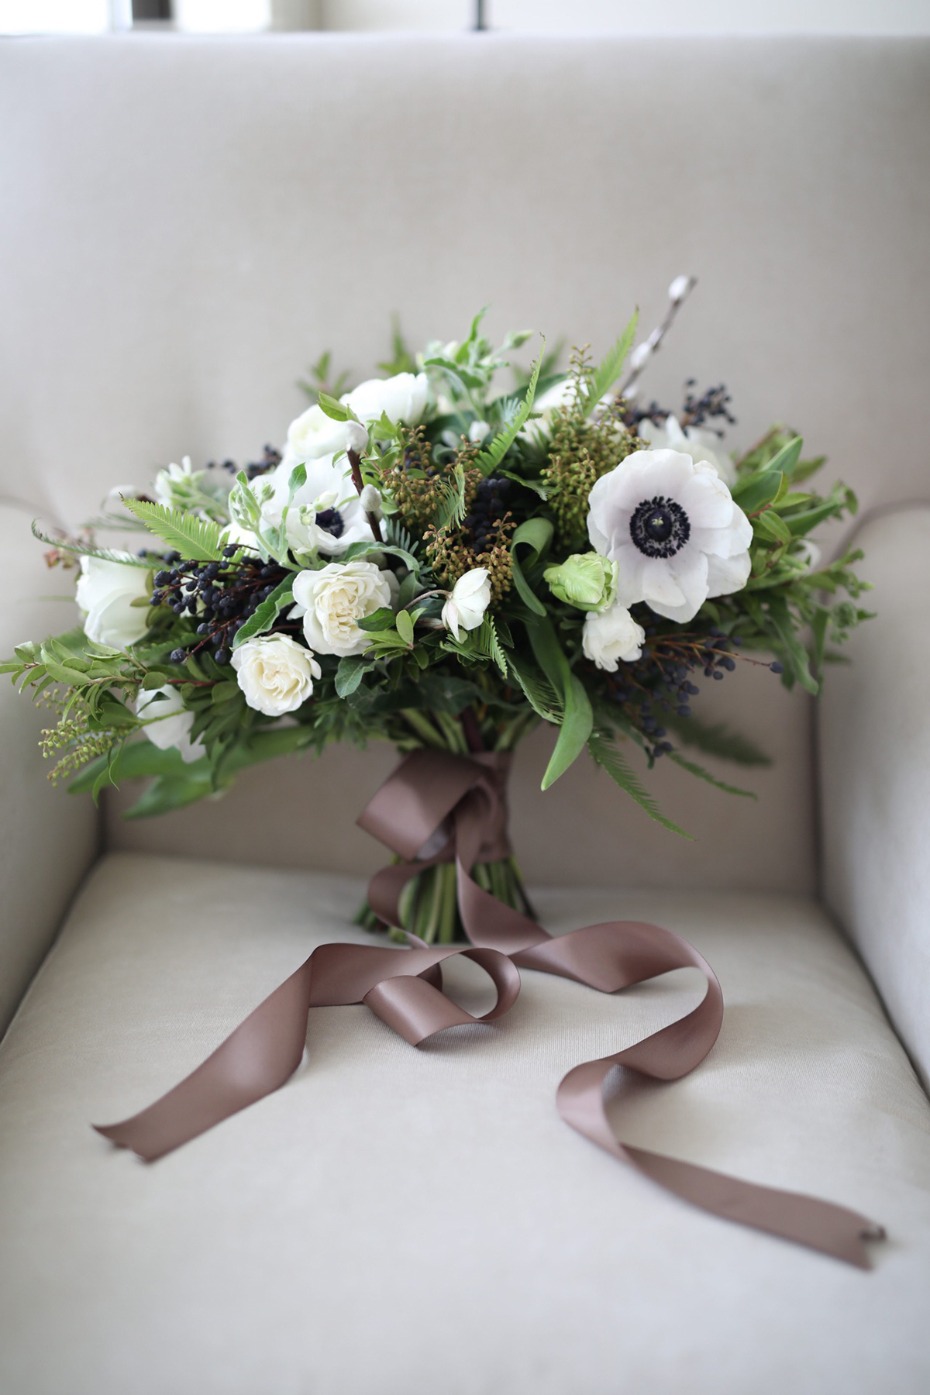 white wedding bouquet